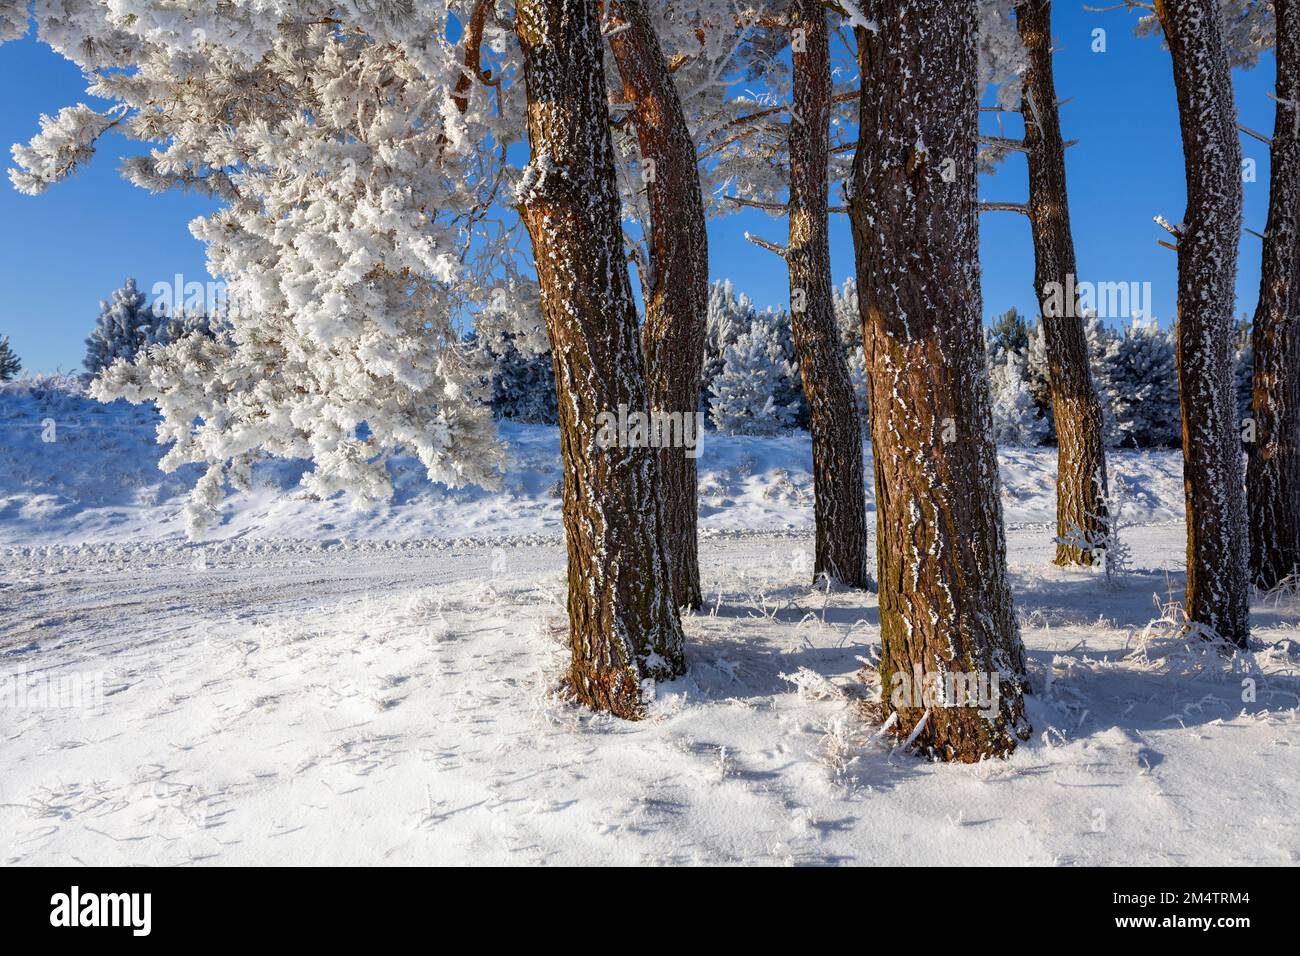 Snowy pines, Suwałki Landscape Park, Poland Stock Photo - Alamy